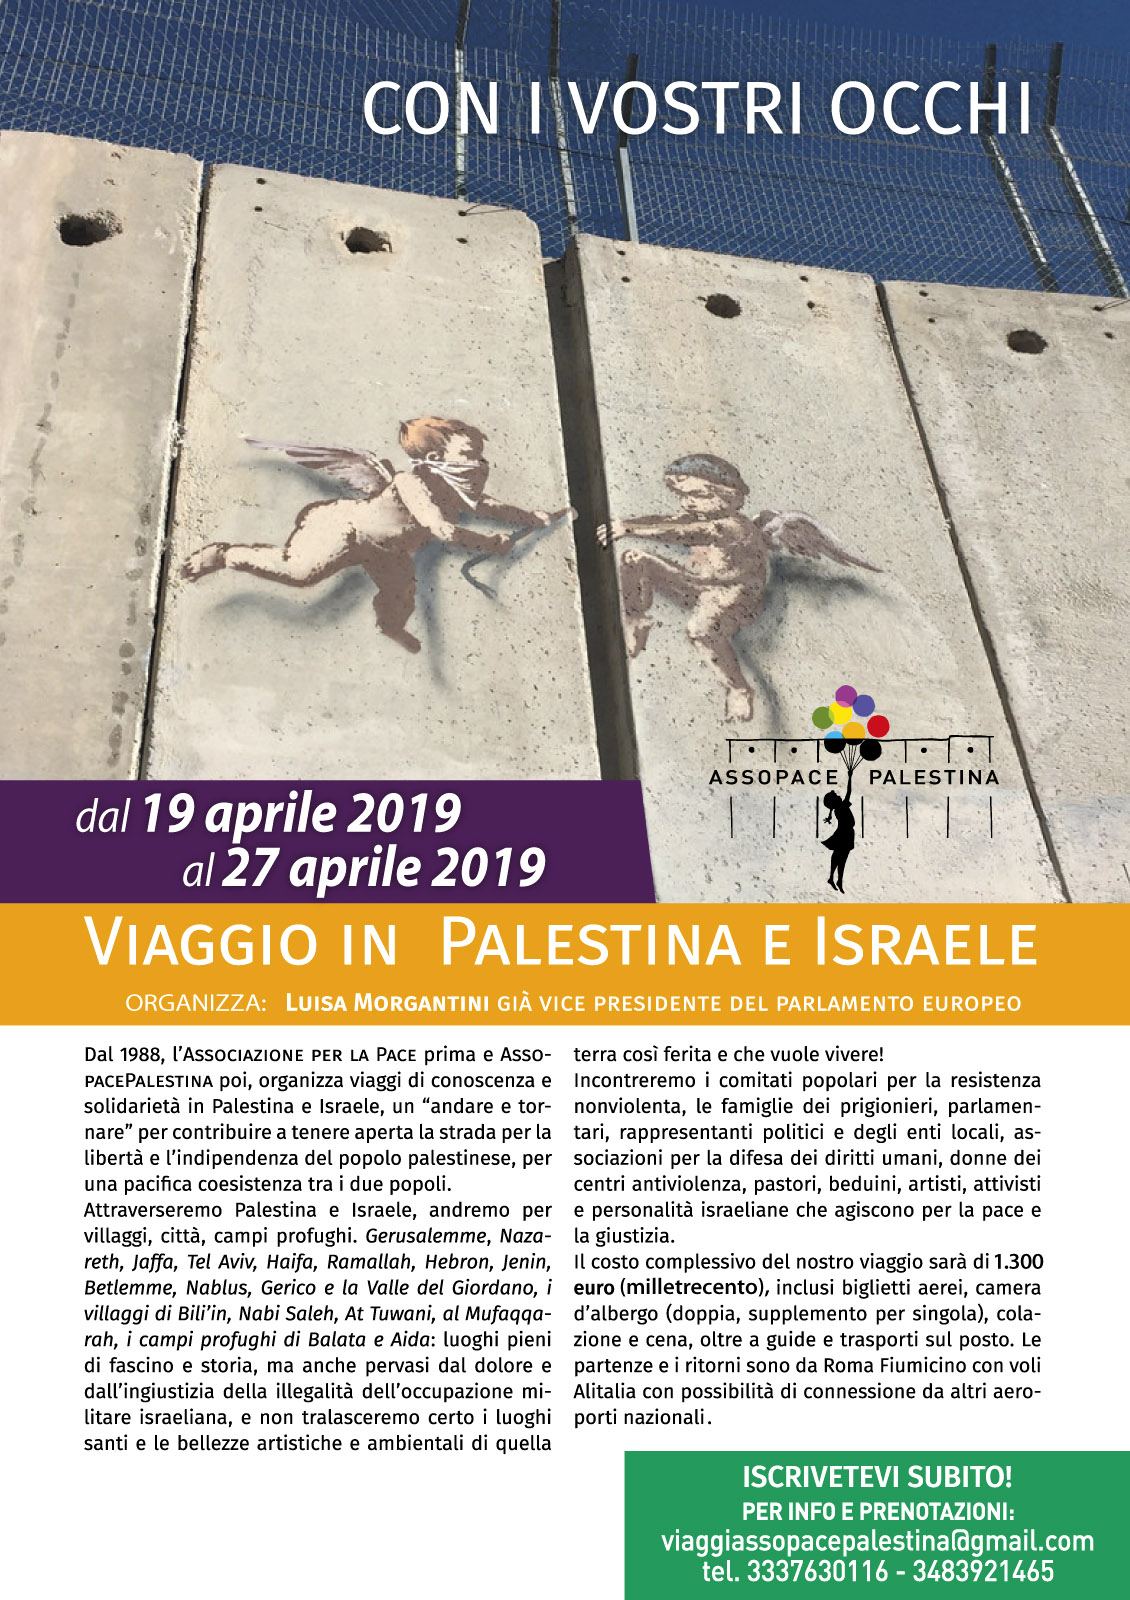 Dal 19 al 27 aprile 2019 il prossimo viaggio in Palestina e Israele.